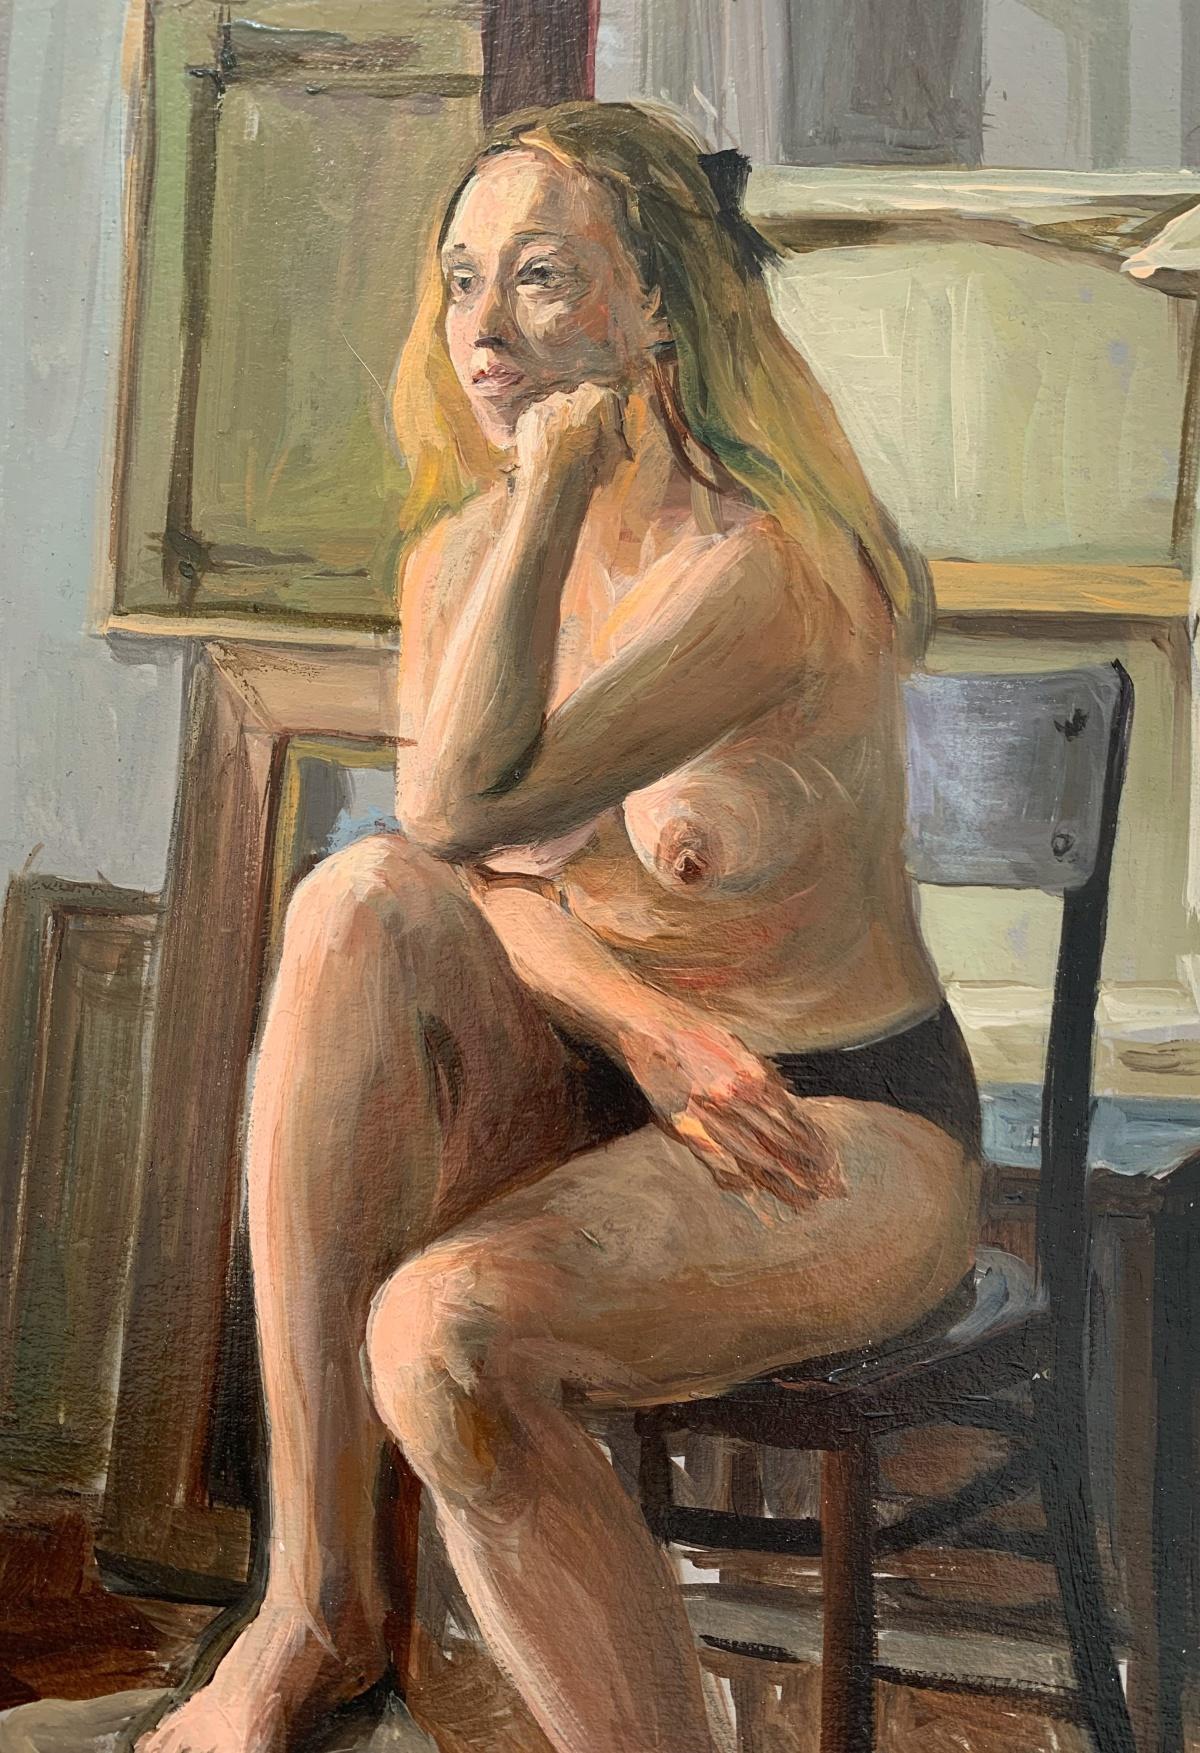 Peinture à l'huile réaliste représentant une femme nue, tons chauds, jeune artiste polonaise - Naturalisme Painting par Agnieszka Staak-Janczarska